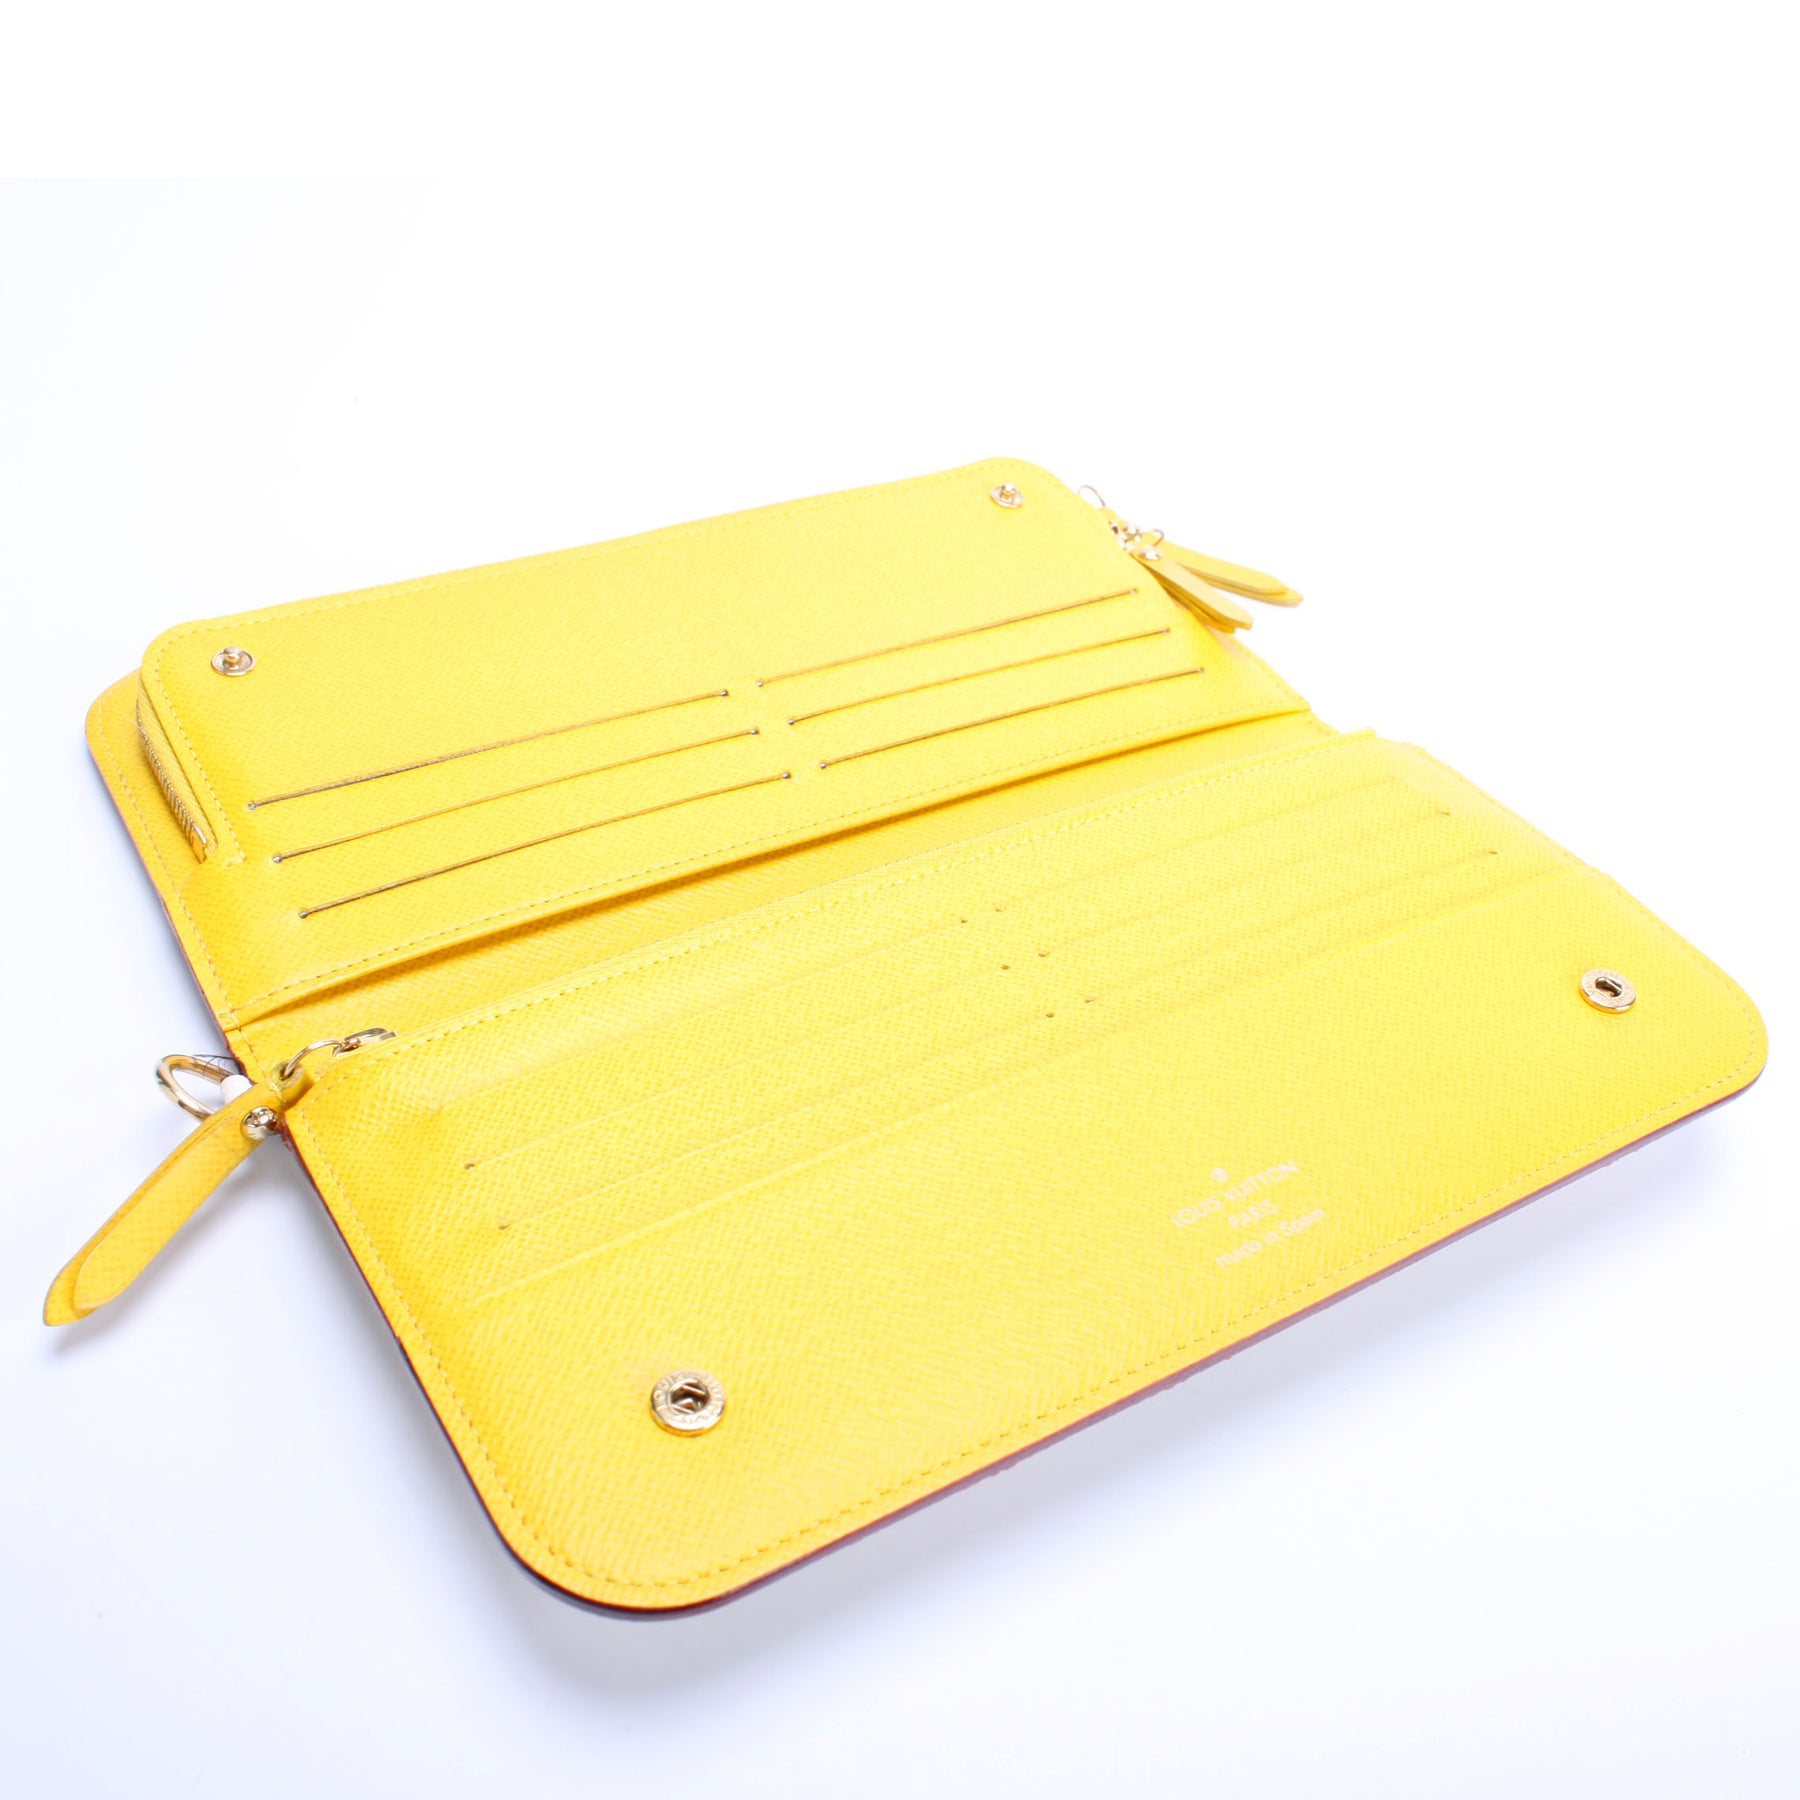 Insolite Wallet Articles De Voyage Monogram – Keeks Designer Handbags